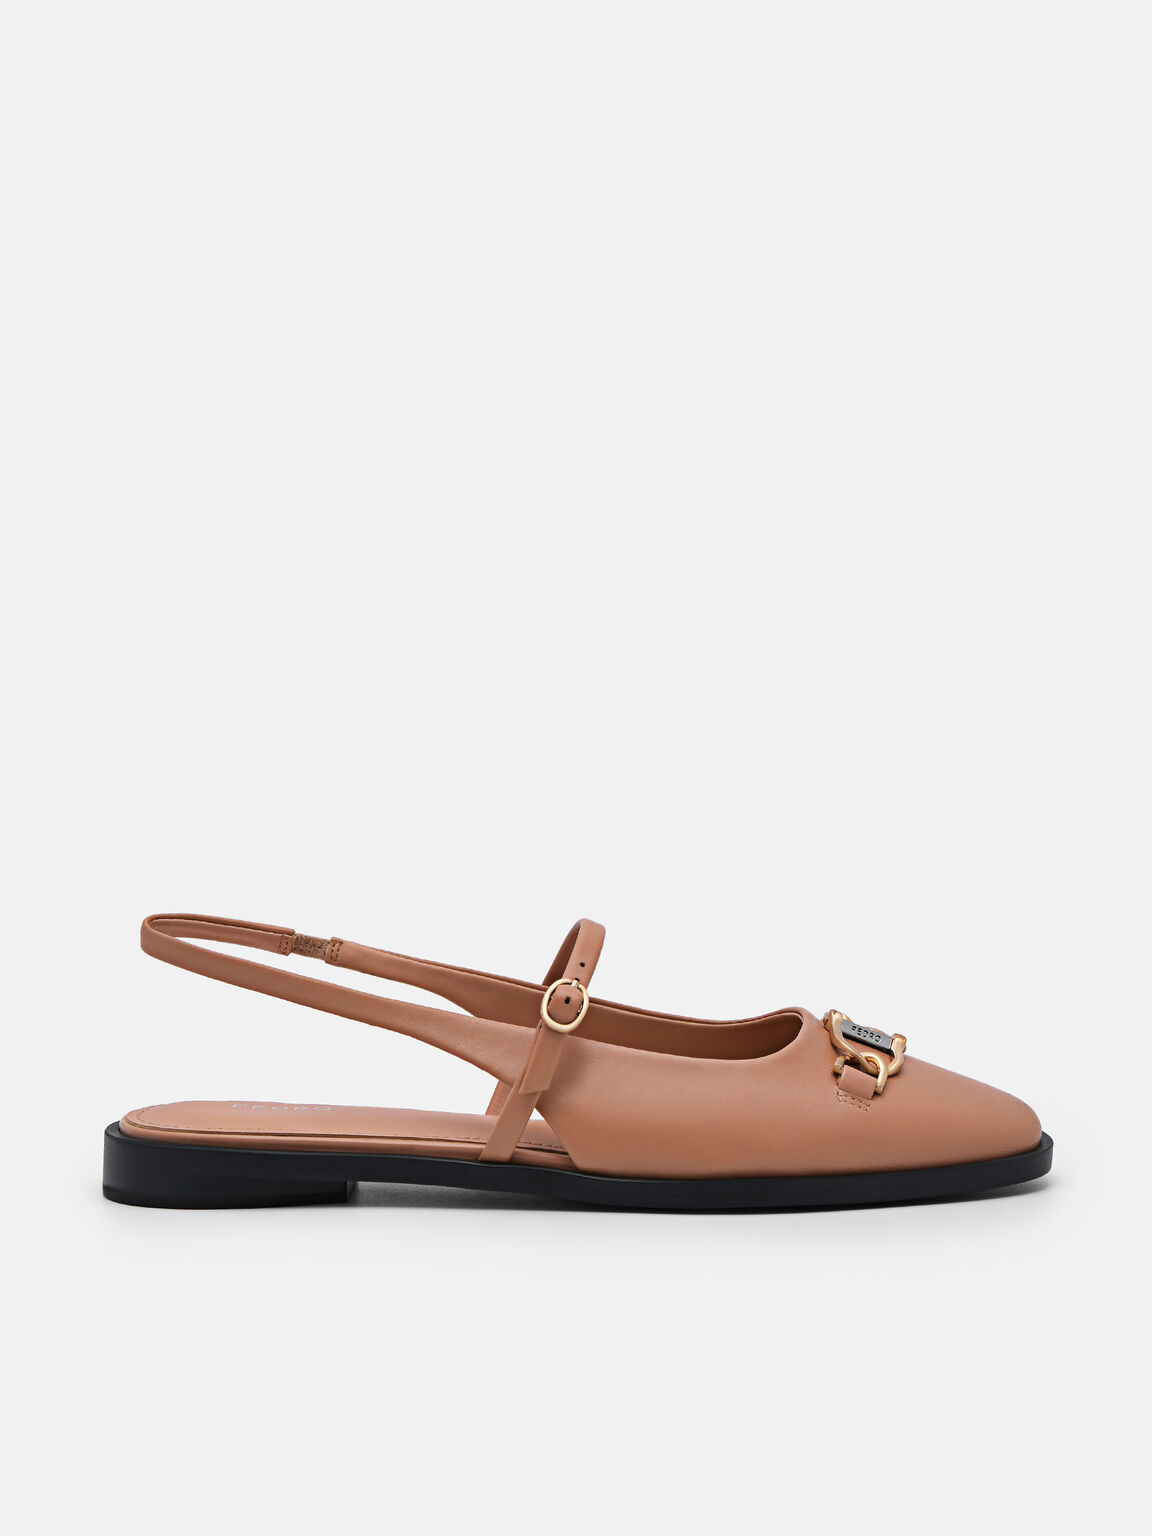 Jean Leather Slingback Sandals, Camel